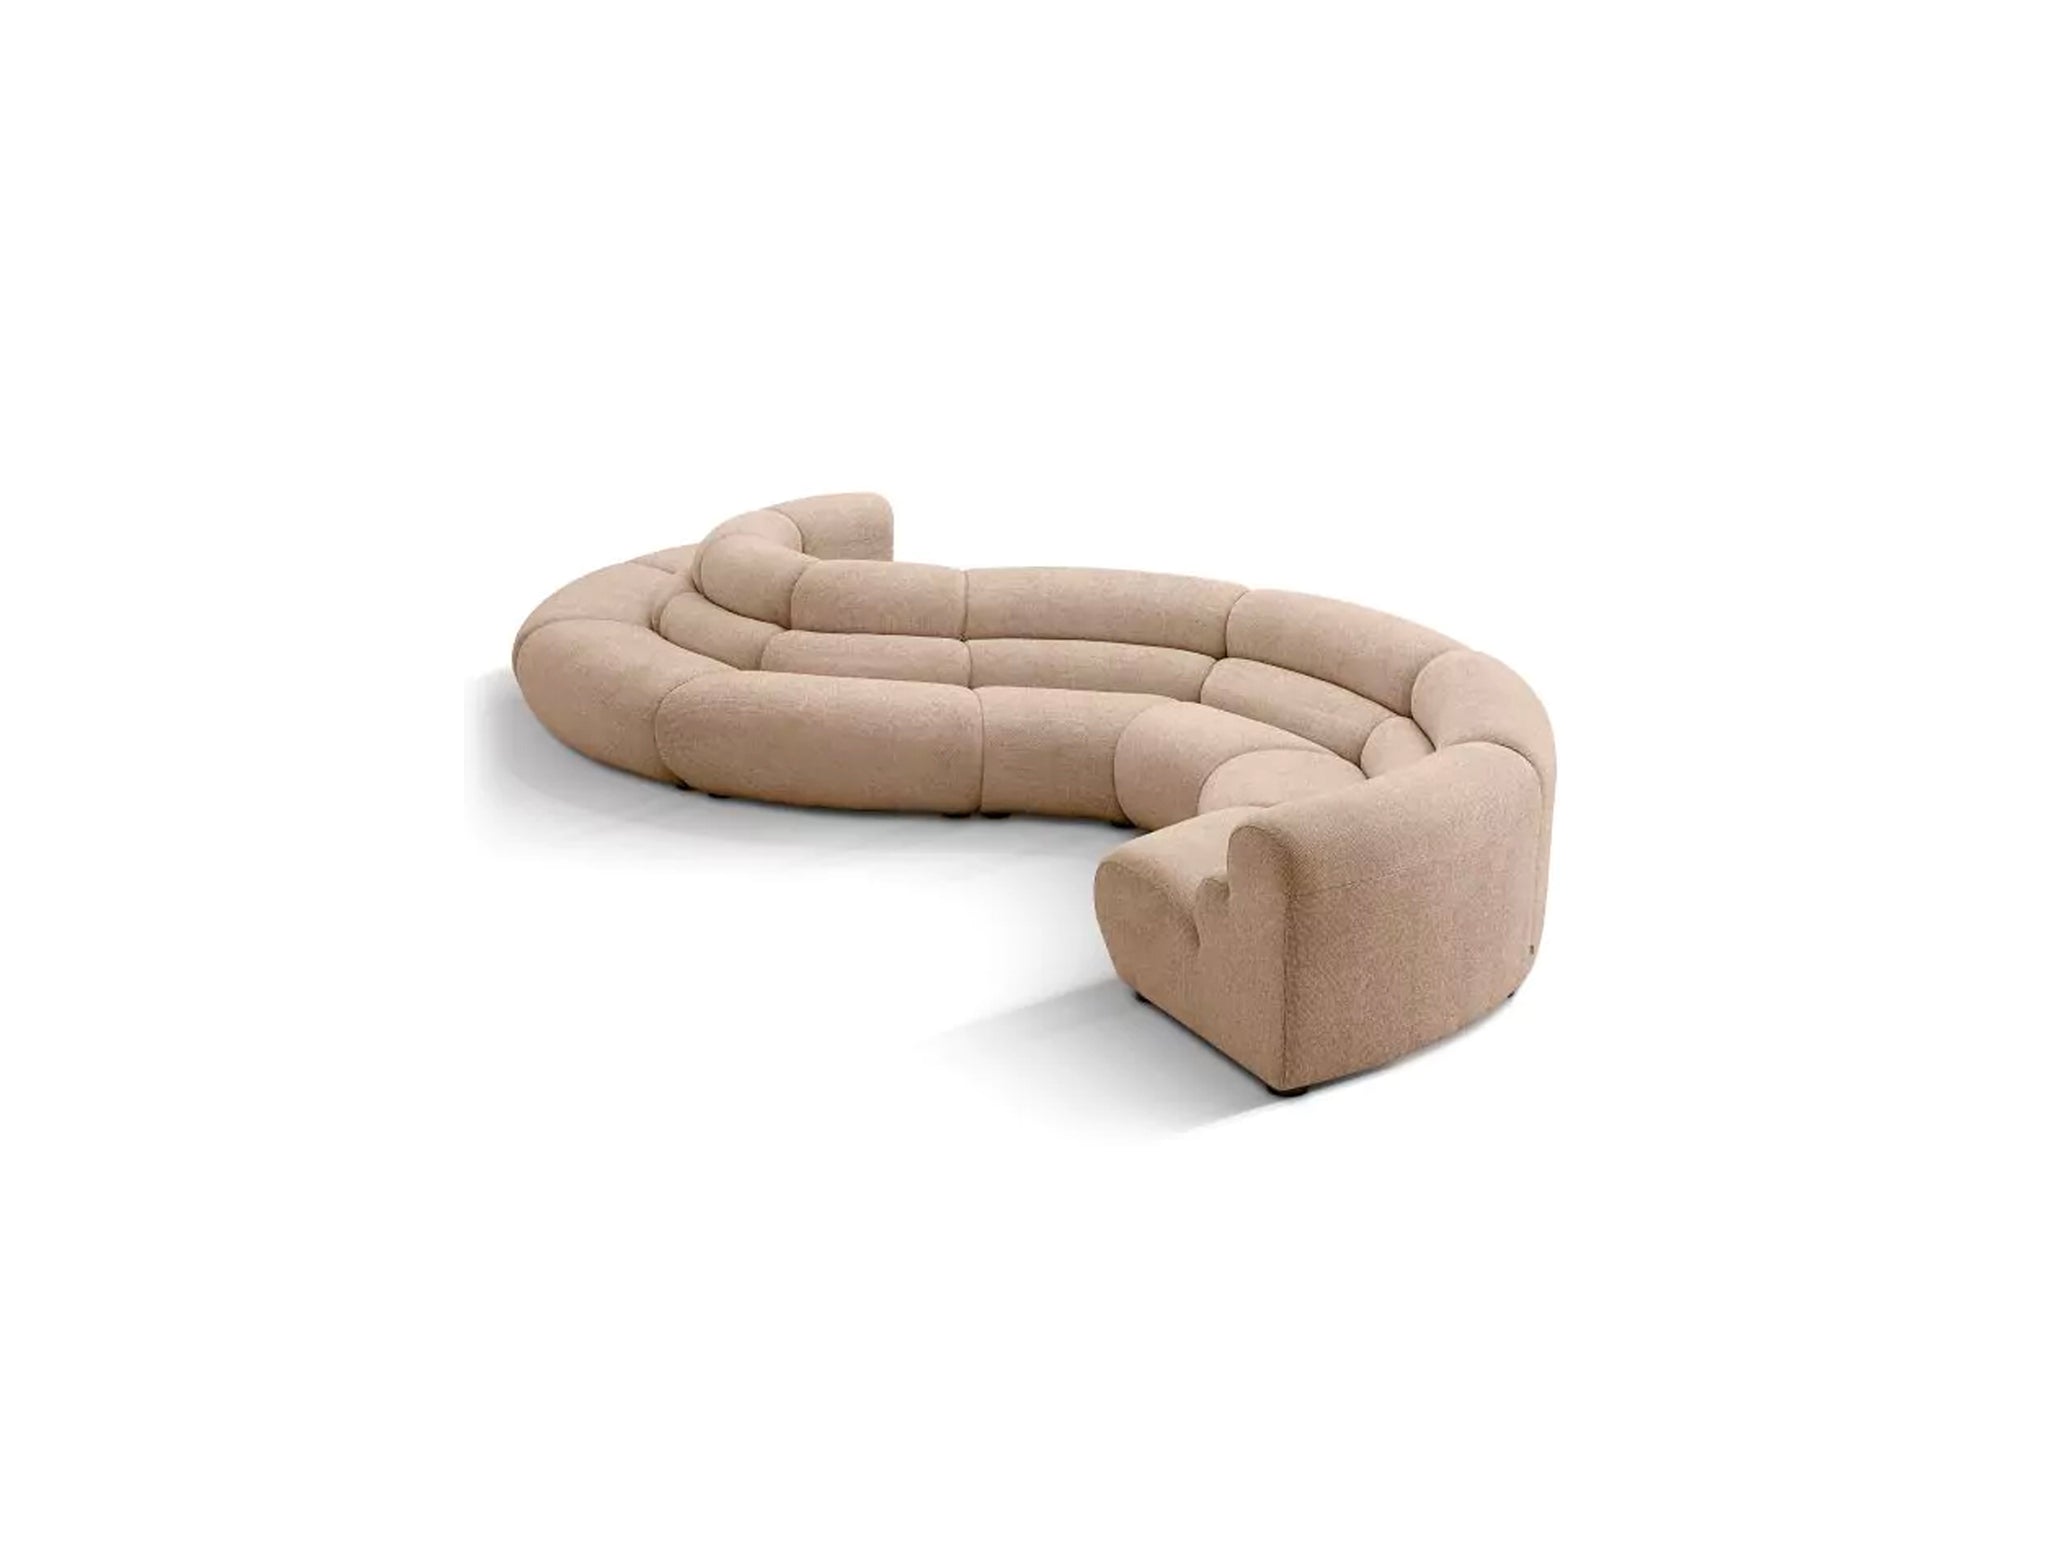 Dorsum Modular Sofa